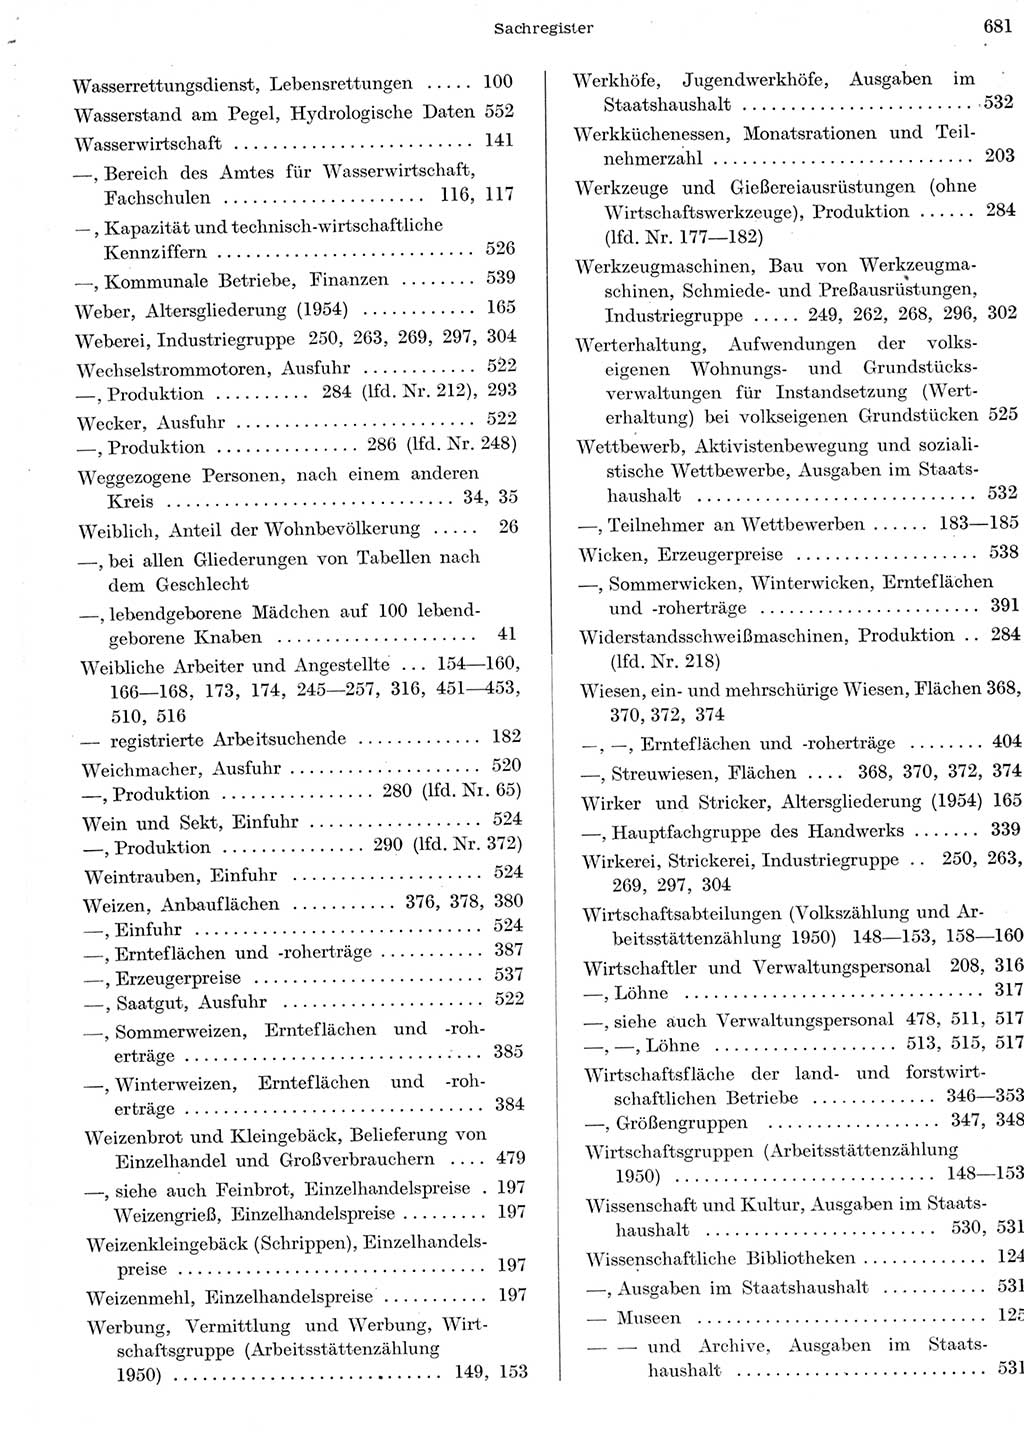 Statistisches Jahrbuch der Deutschen Demokratischen Republik (DDR) 1956, Seite 681 (Stat. Jb. DDR 1956, S. 681)